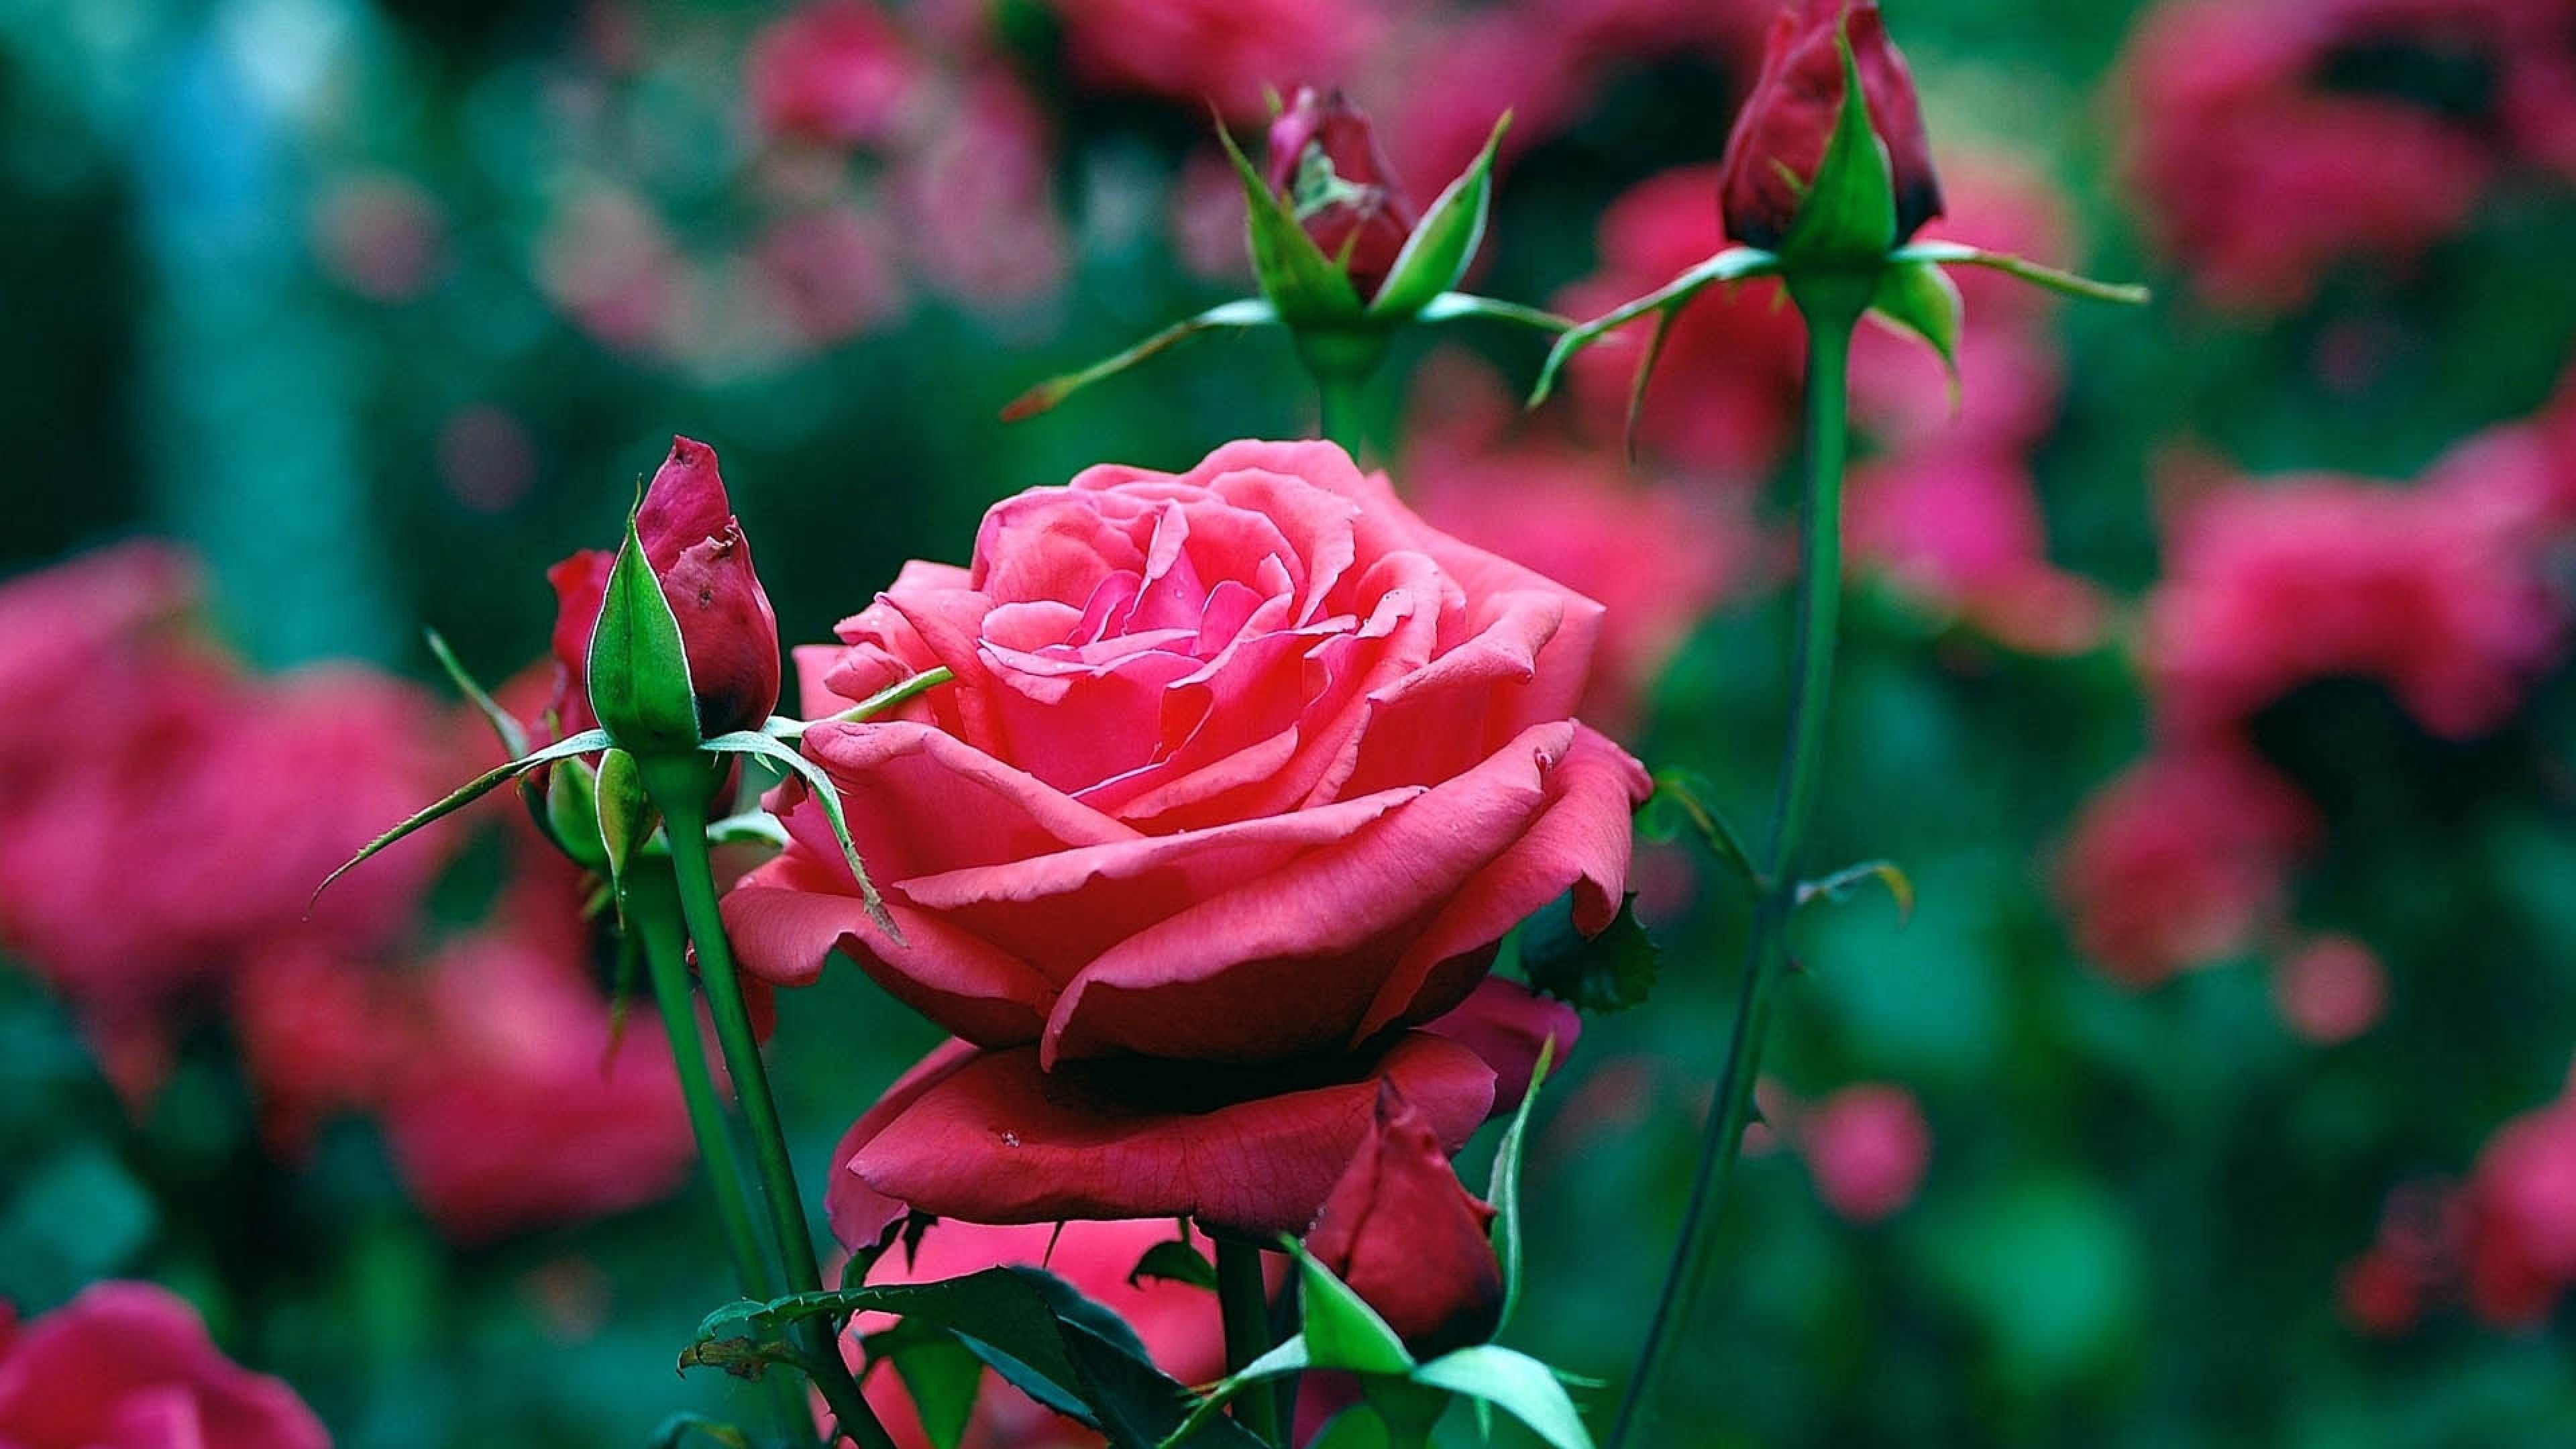 carta da parati a fiori hd 1080p,fiore,pianta fiorita,rose da giardino,petalo,rosa